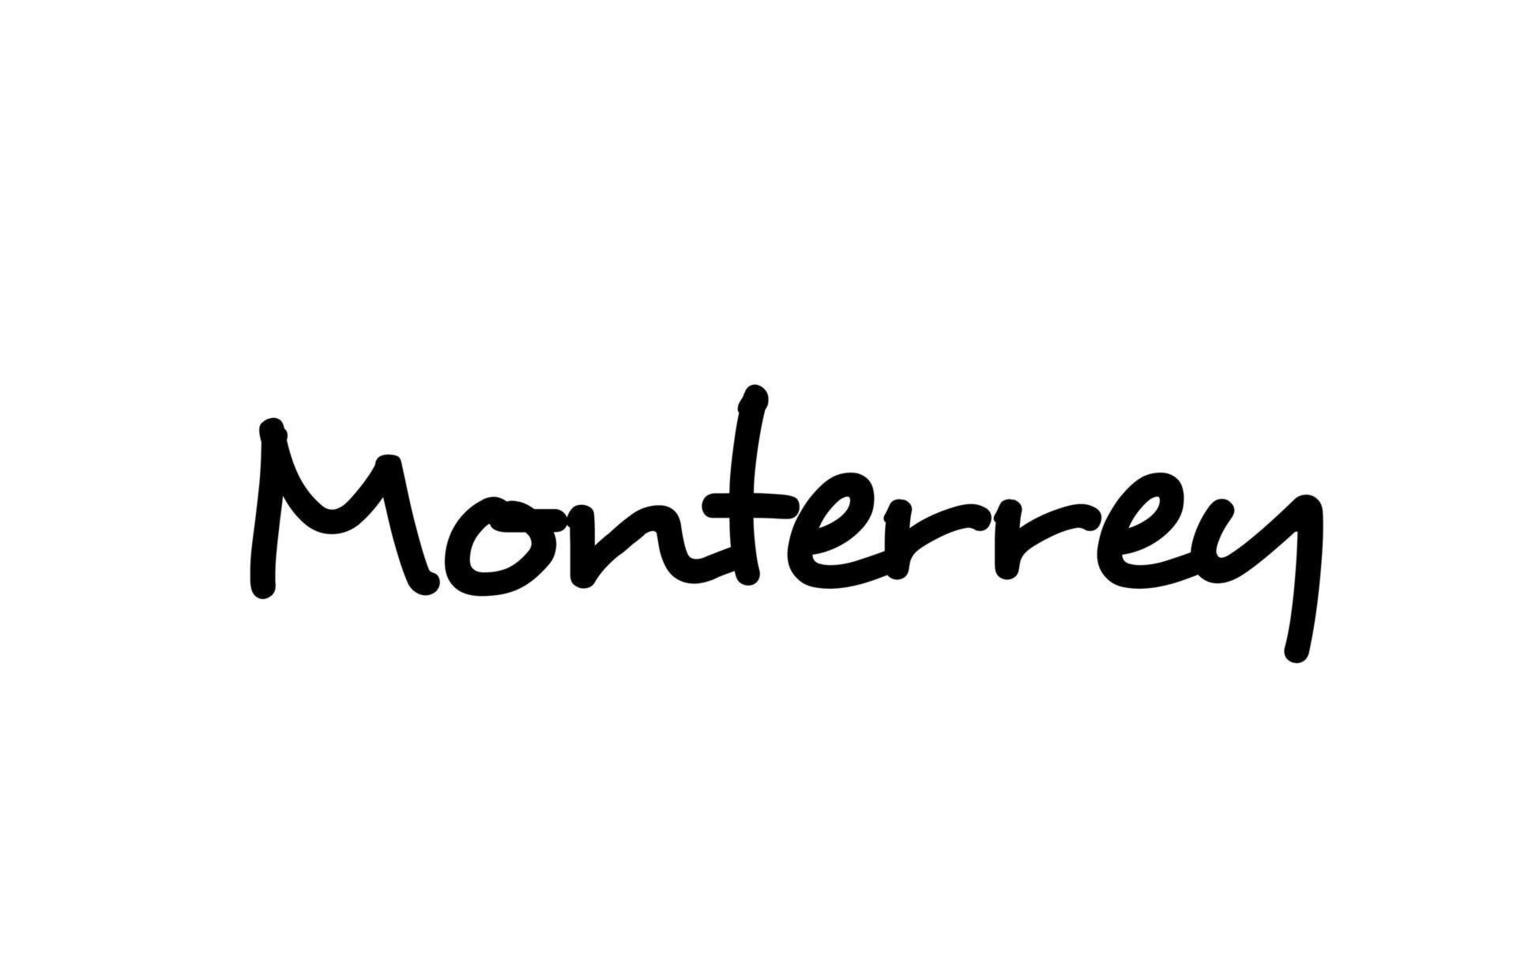 monterrey city handskriven ord text hand bokstäver. kalligrafi text. typografi i svart färg vektor